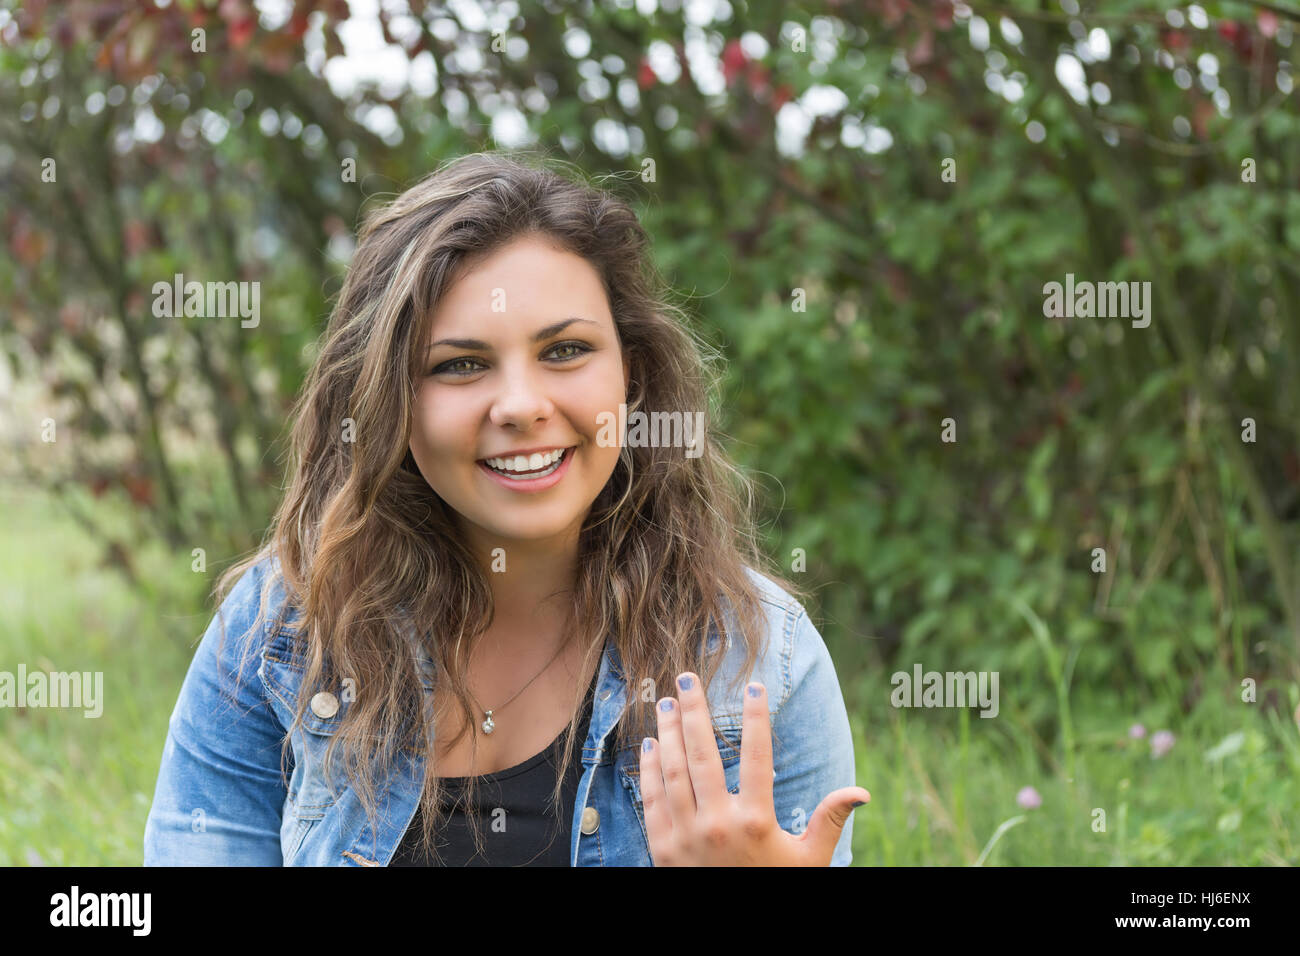 Attraktive Teenager-Mädchen lächelnd gestikulierend und schaut in die Kamera im Freien. Stockfoto